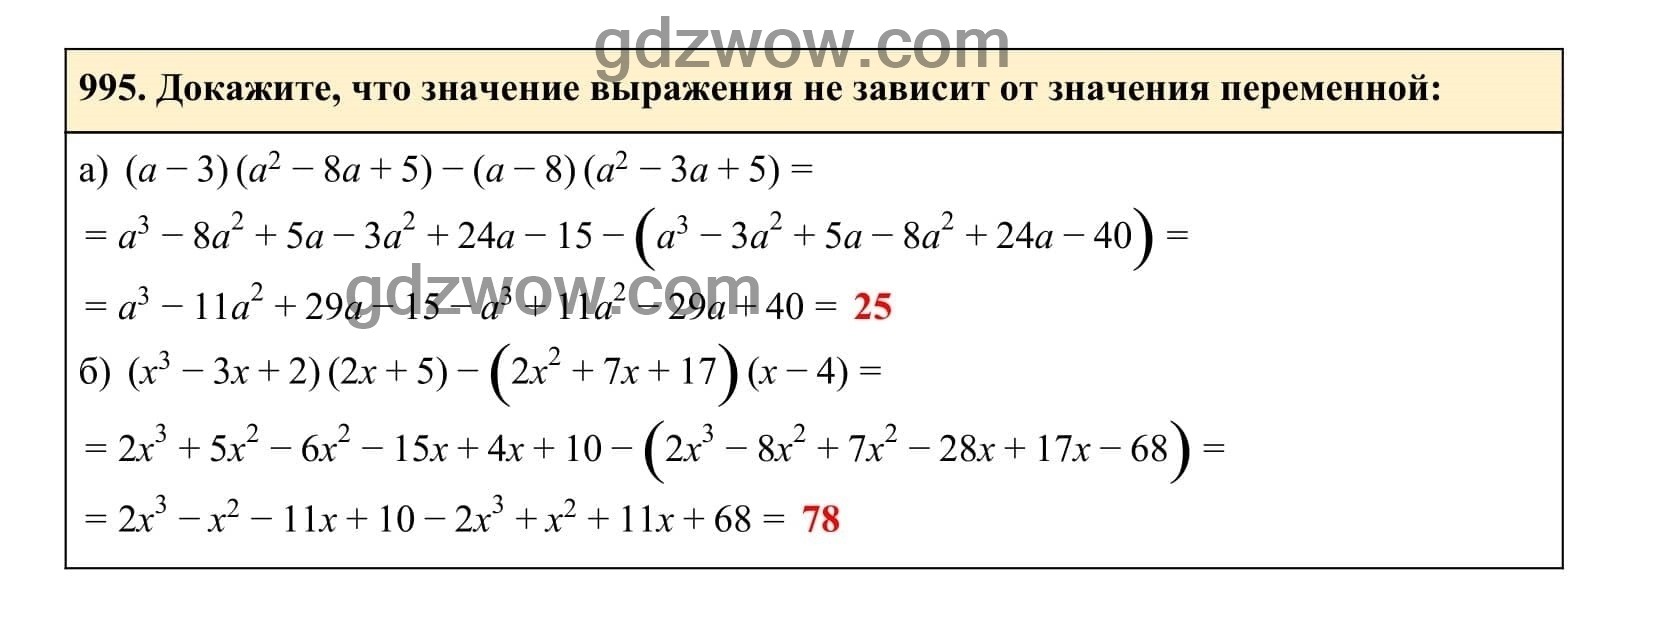 Упражнение 995 - ГДЗ по Алгебре 7 класс Учебник Макарычев (решебник) - GDZwow